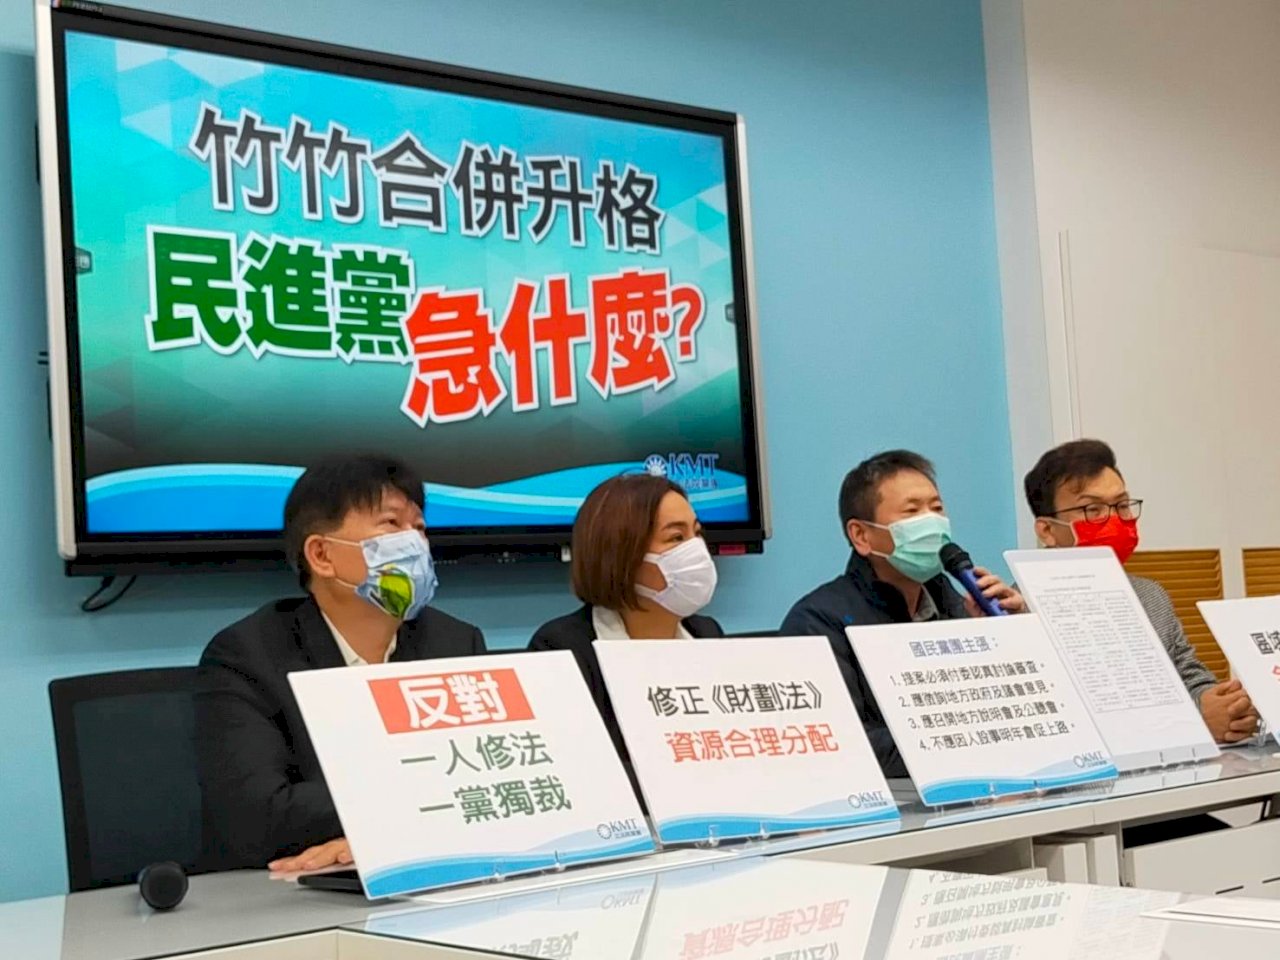 大新竹合併修法擬闖關 在野黨同聲反對倉促修法因人設事